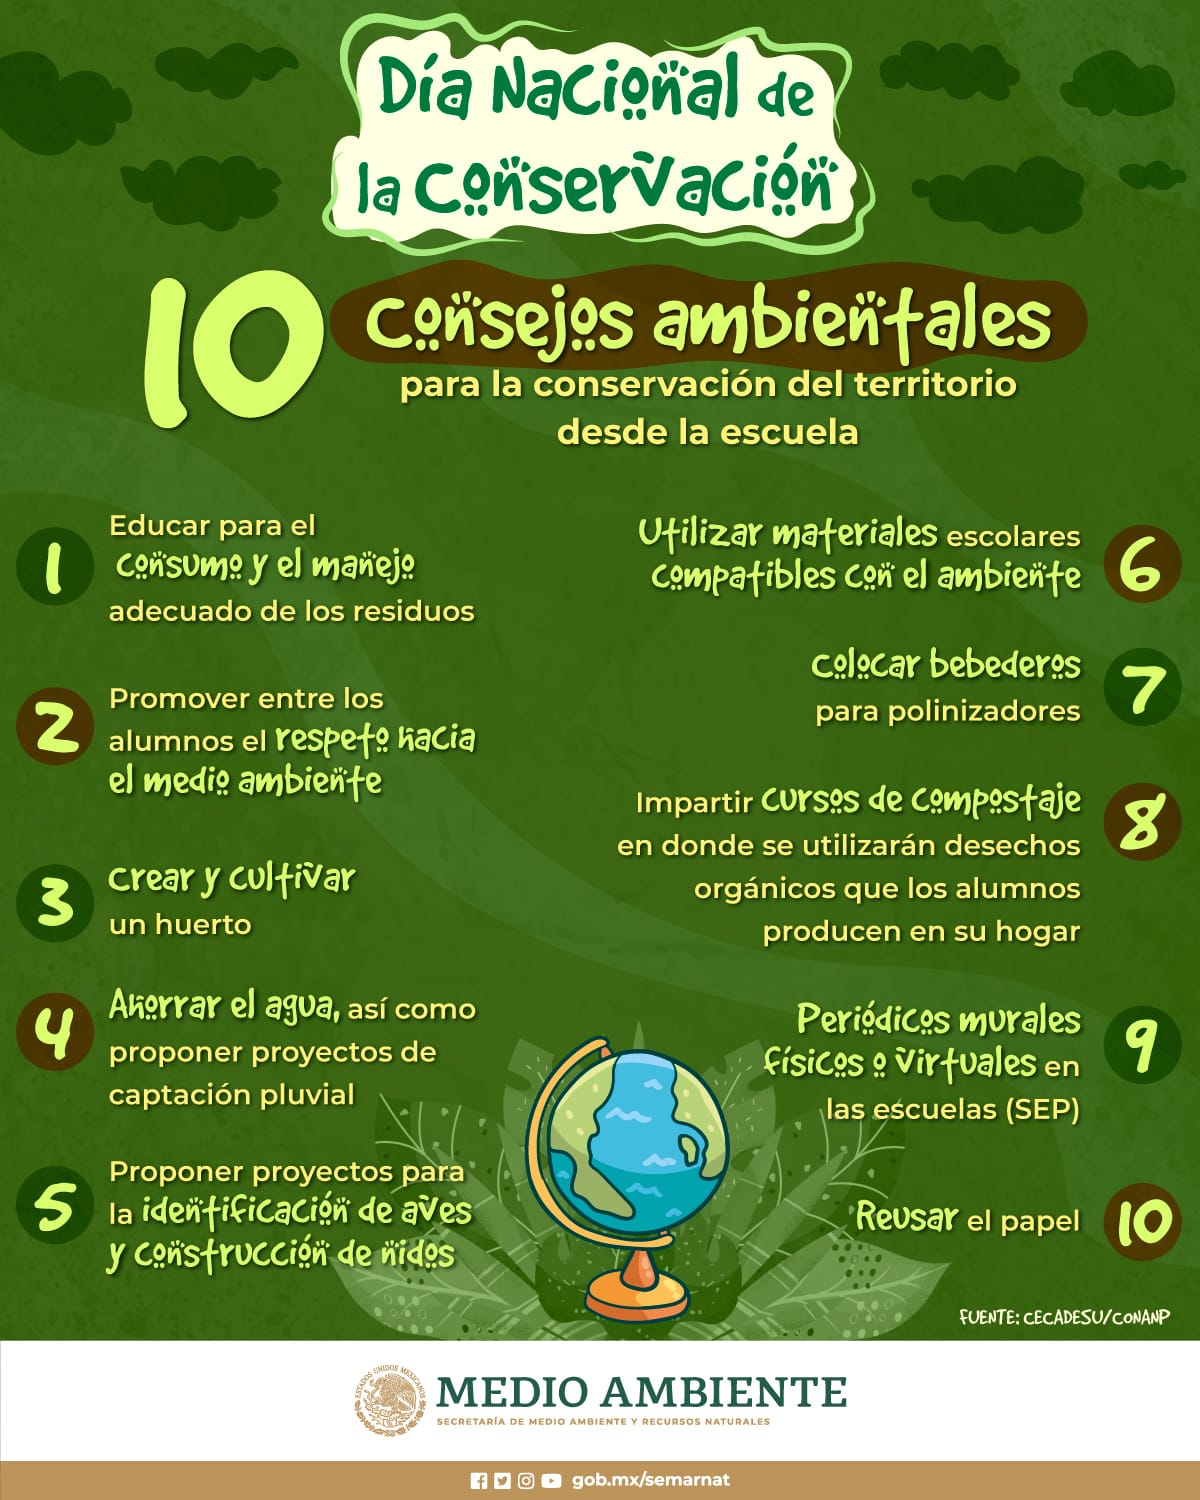 Día Nacional de la Conservación, 10 consejos ambientales para la conservación desde la escuela (Infografía)- SEMARNAT